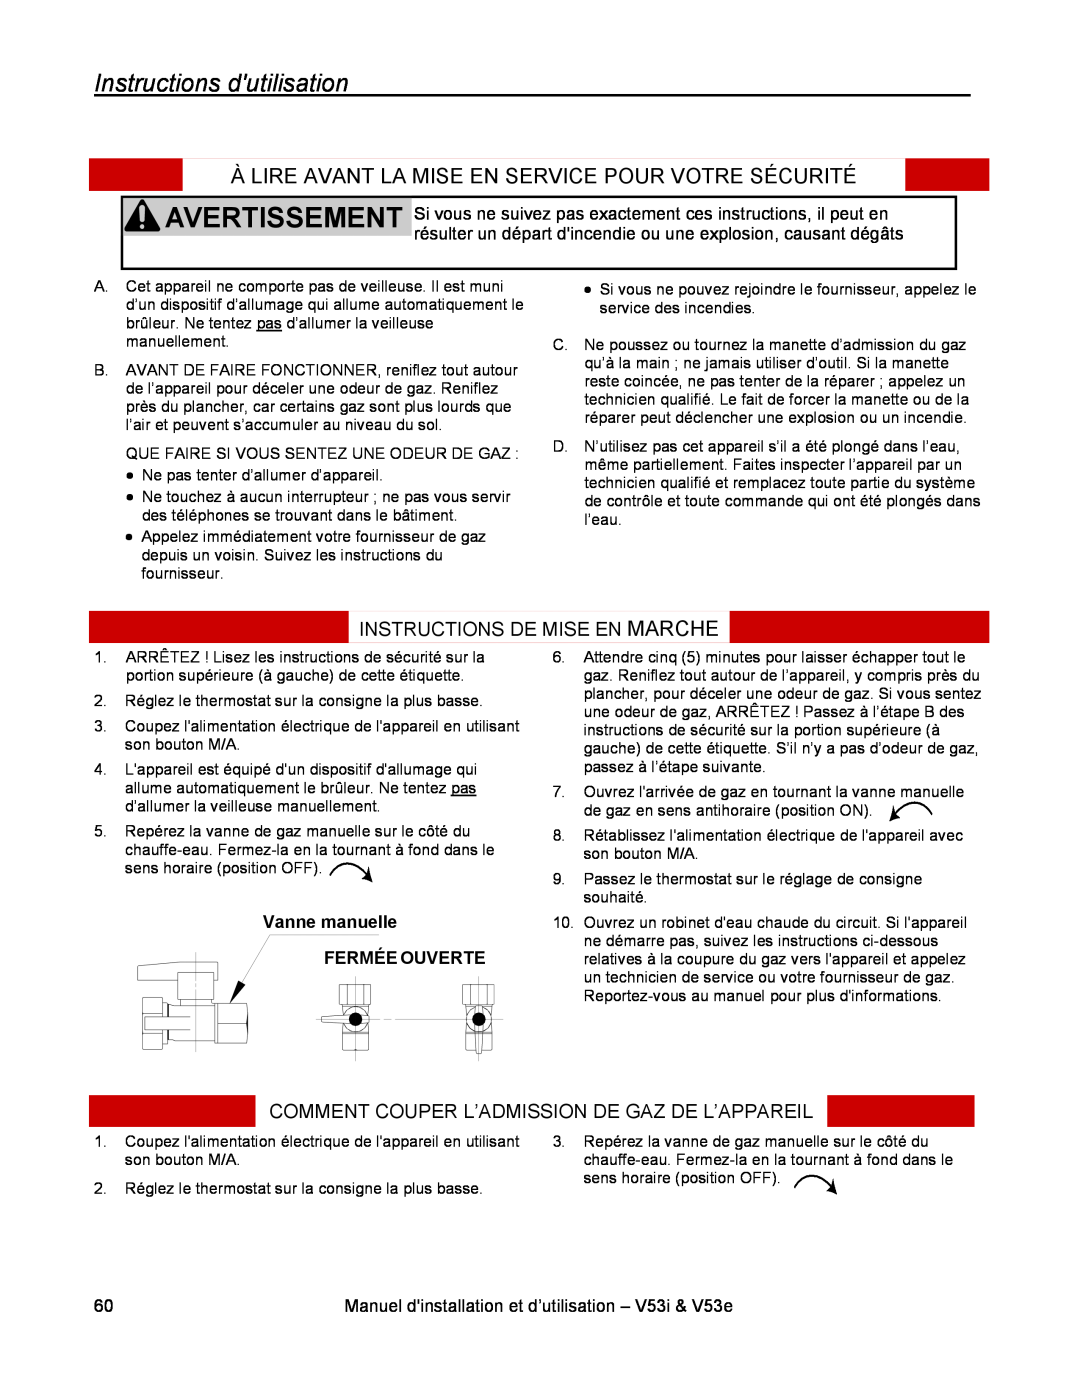 Rinnai V53E Instructions dutilisation, Instructions De Mise En Marche, Comment Couper L’Admission De Gaz De L’Appareil 